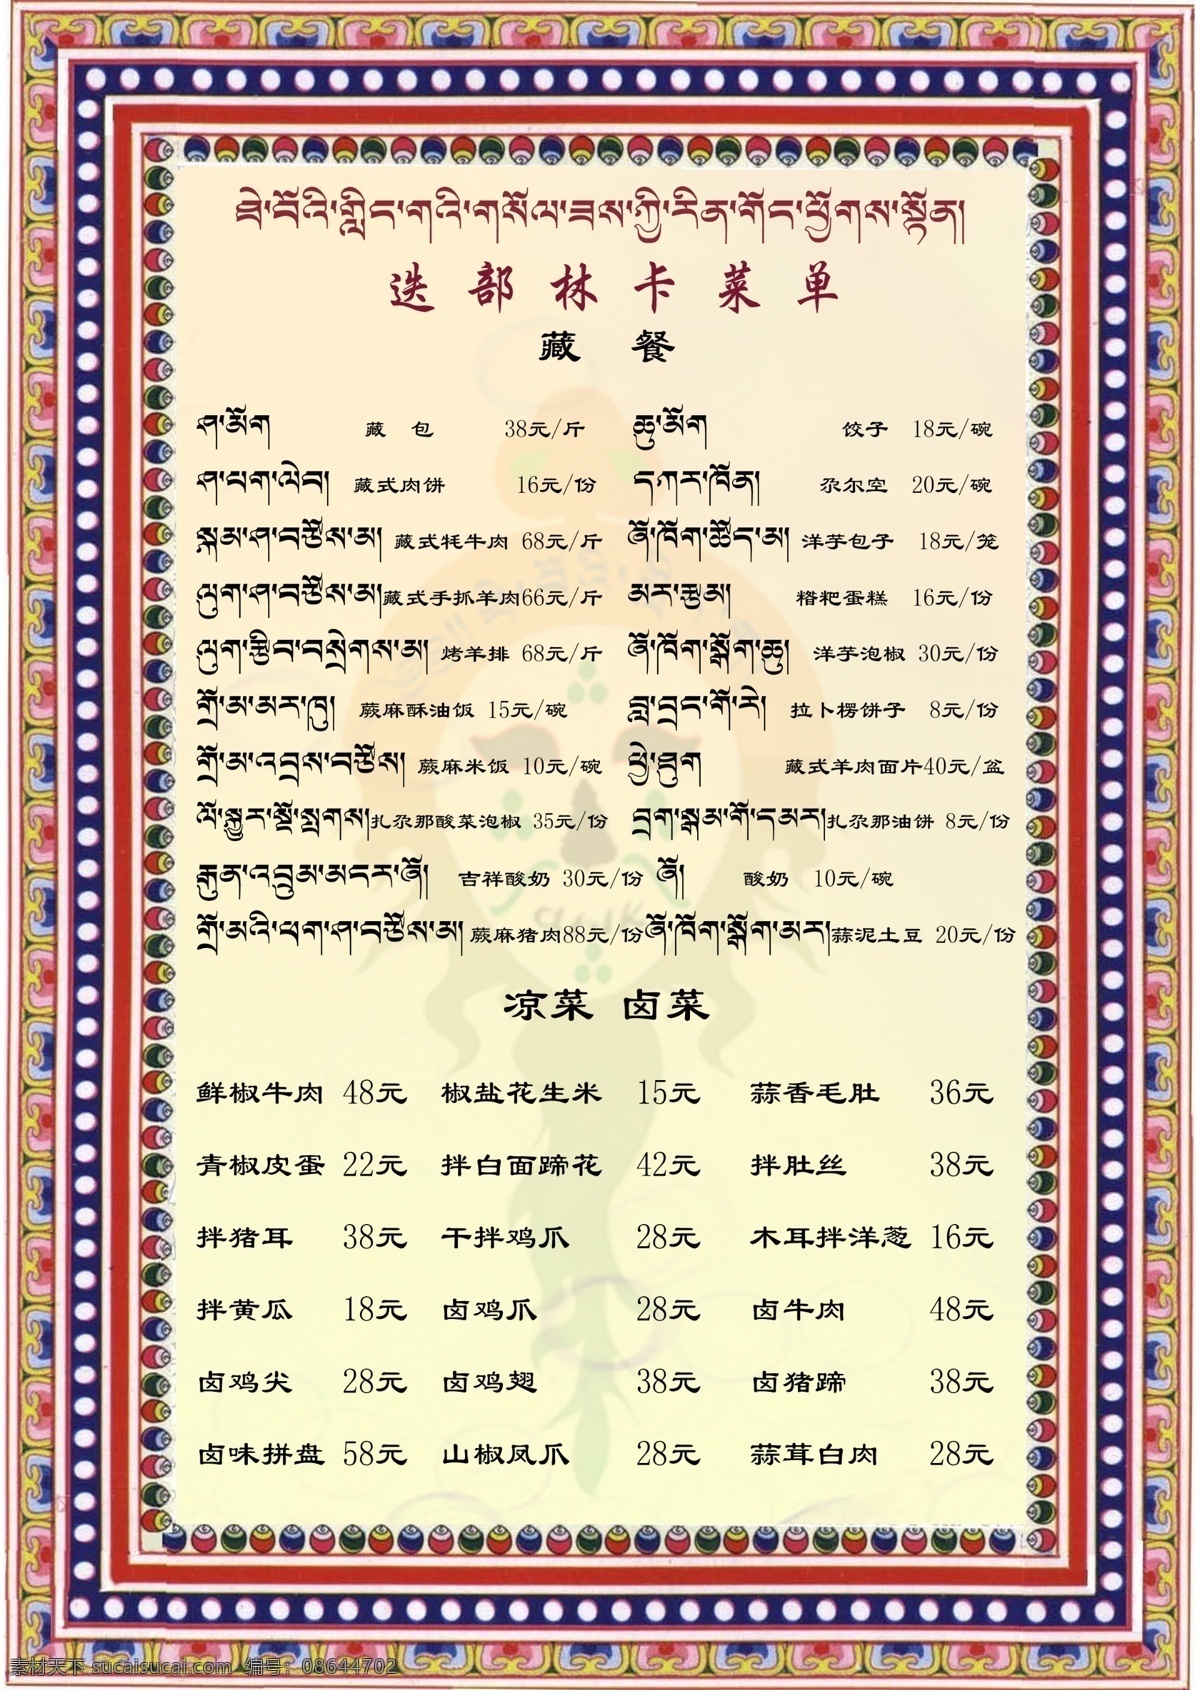 藏文菜谱 菜单 藏餐 甘南特色 藏族菜单 菜单菜谱 广告设计模板 源文件 白色